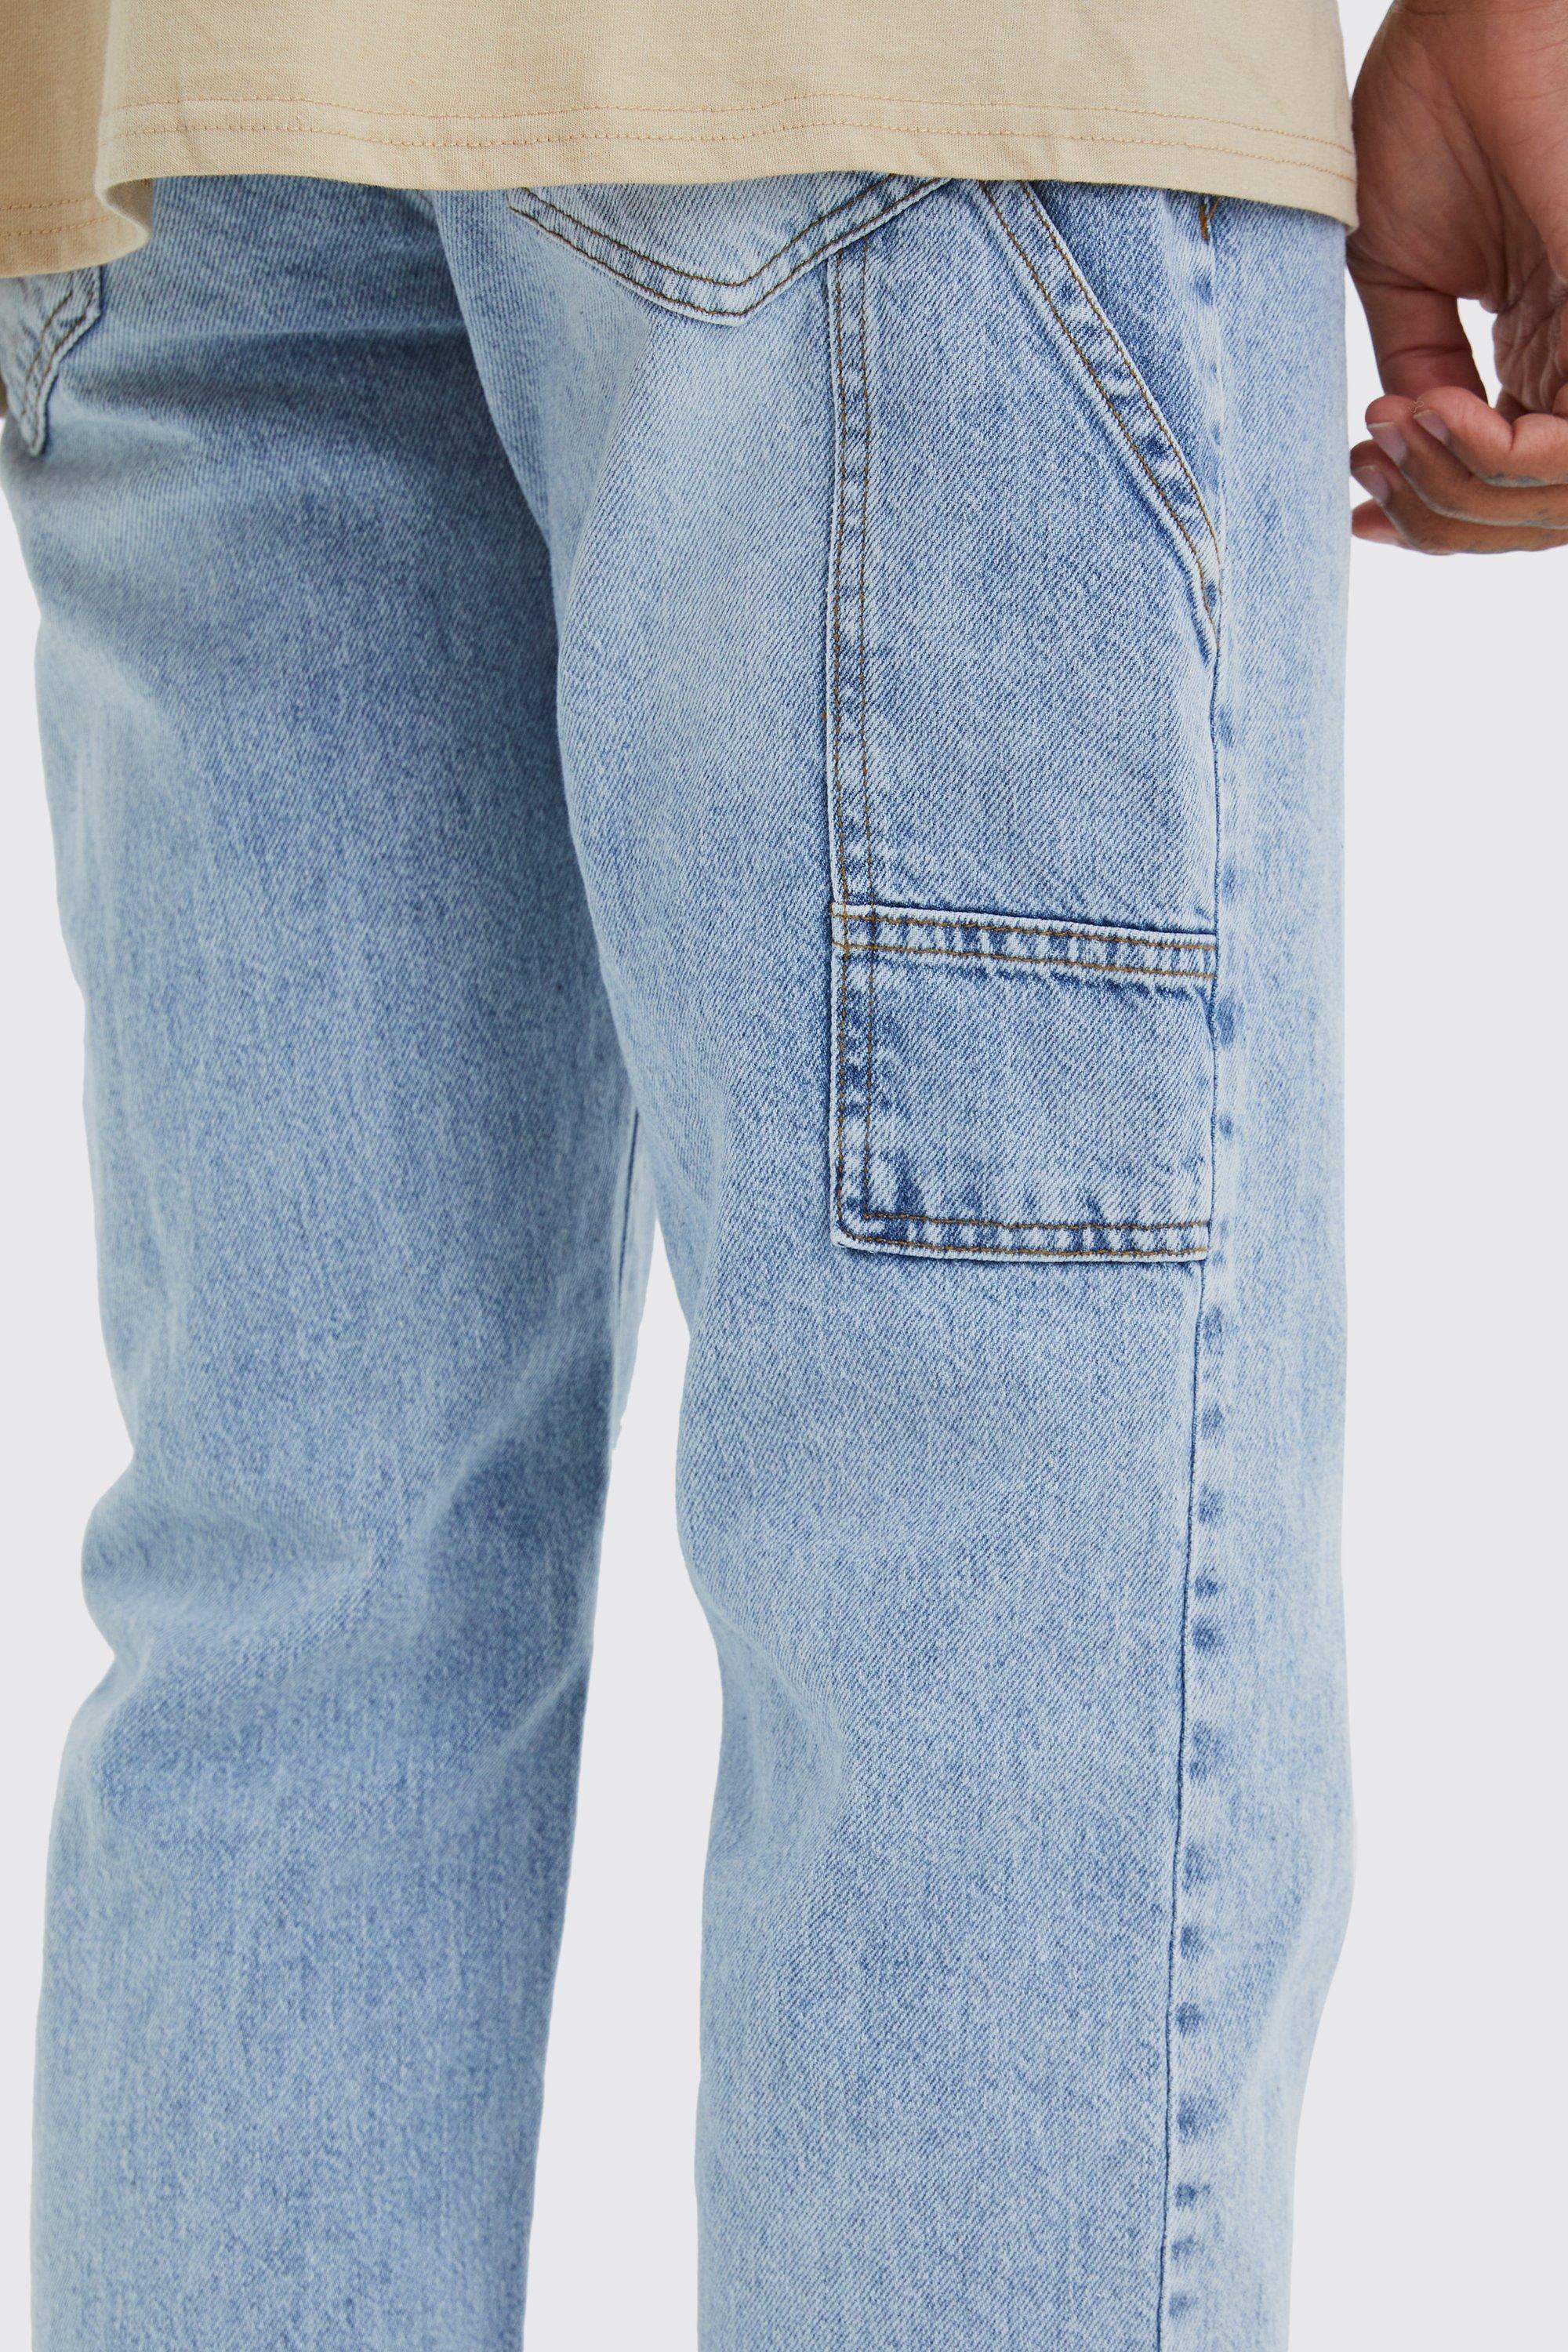 Men's Baggy Fit Carpenter Jeans